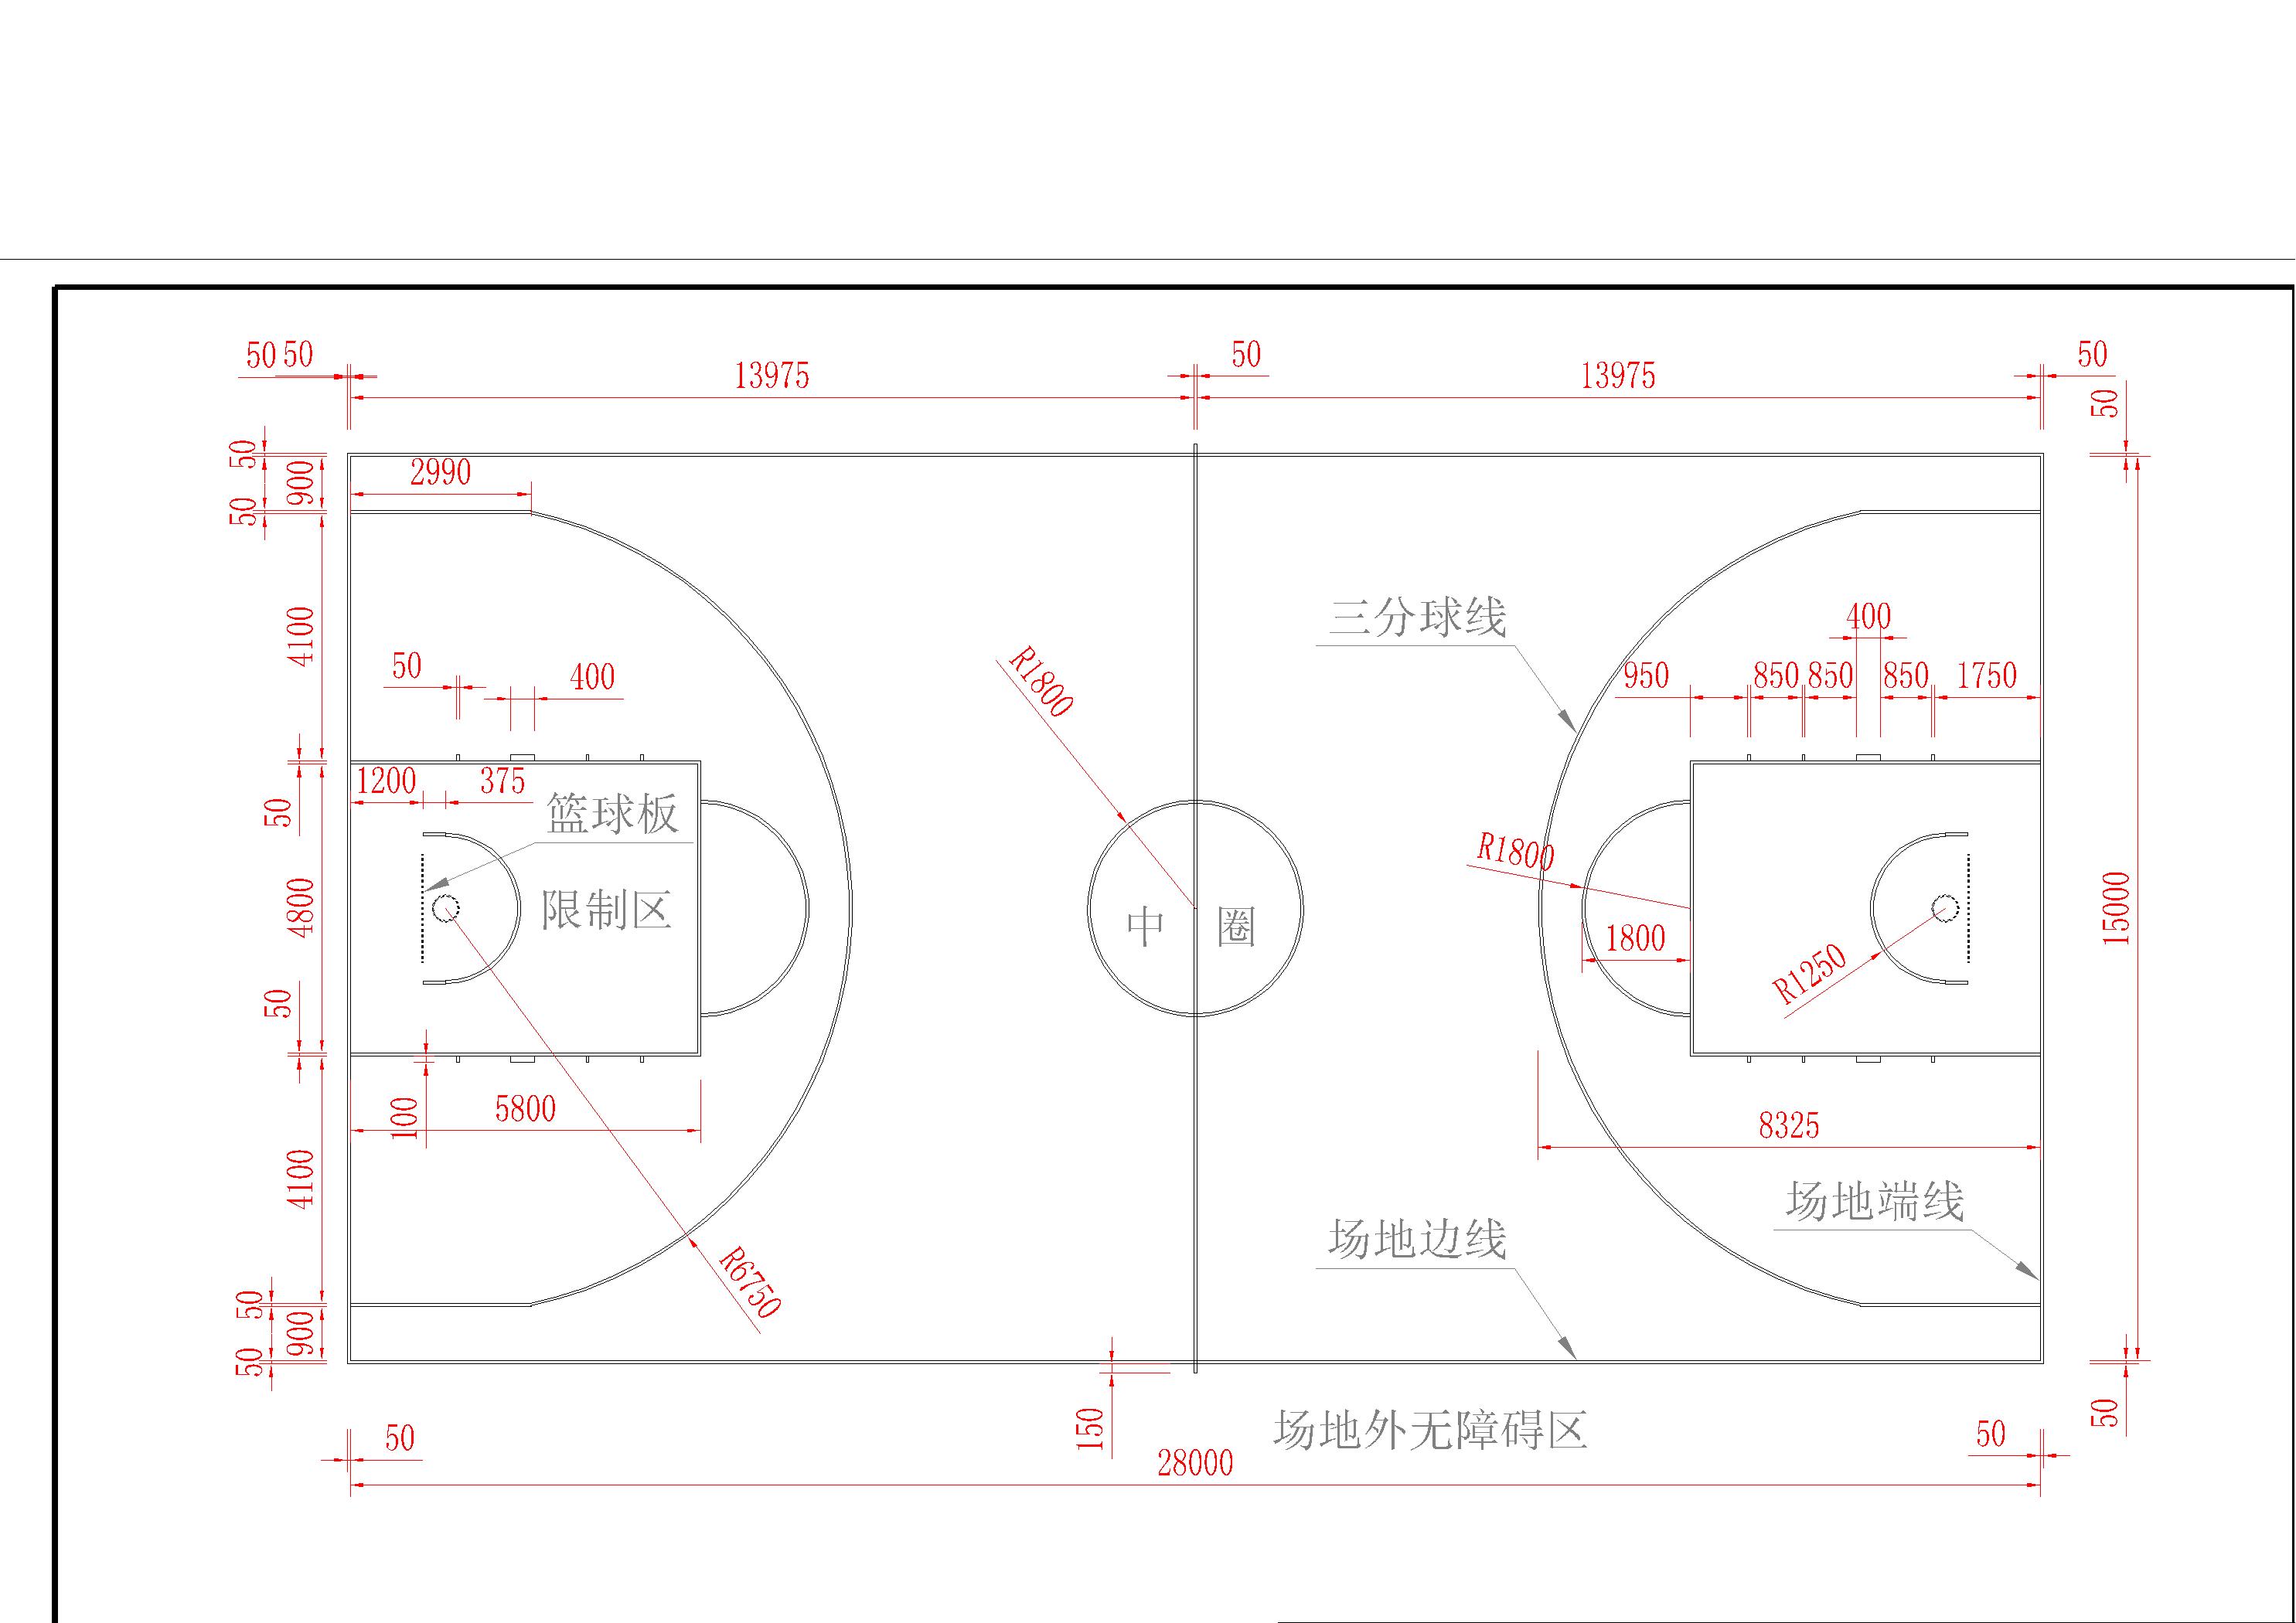 奥运会篮球比赛和世界篮球锦标赛比赛通用标准篮球场尺寸及线条图参考